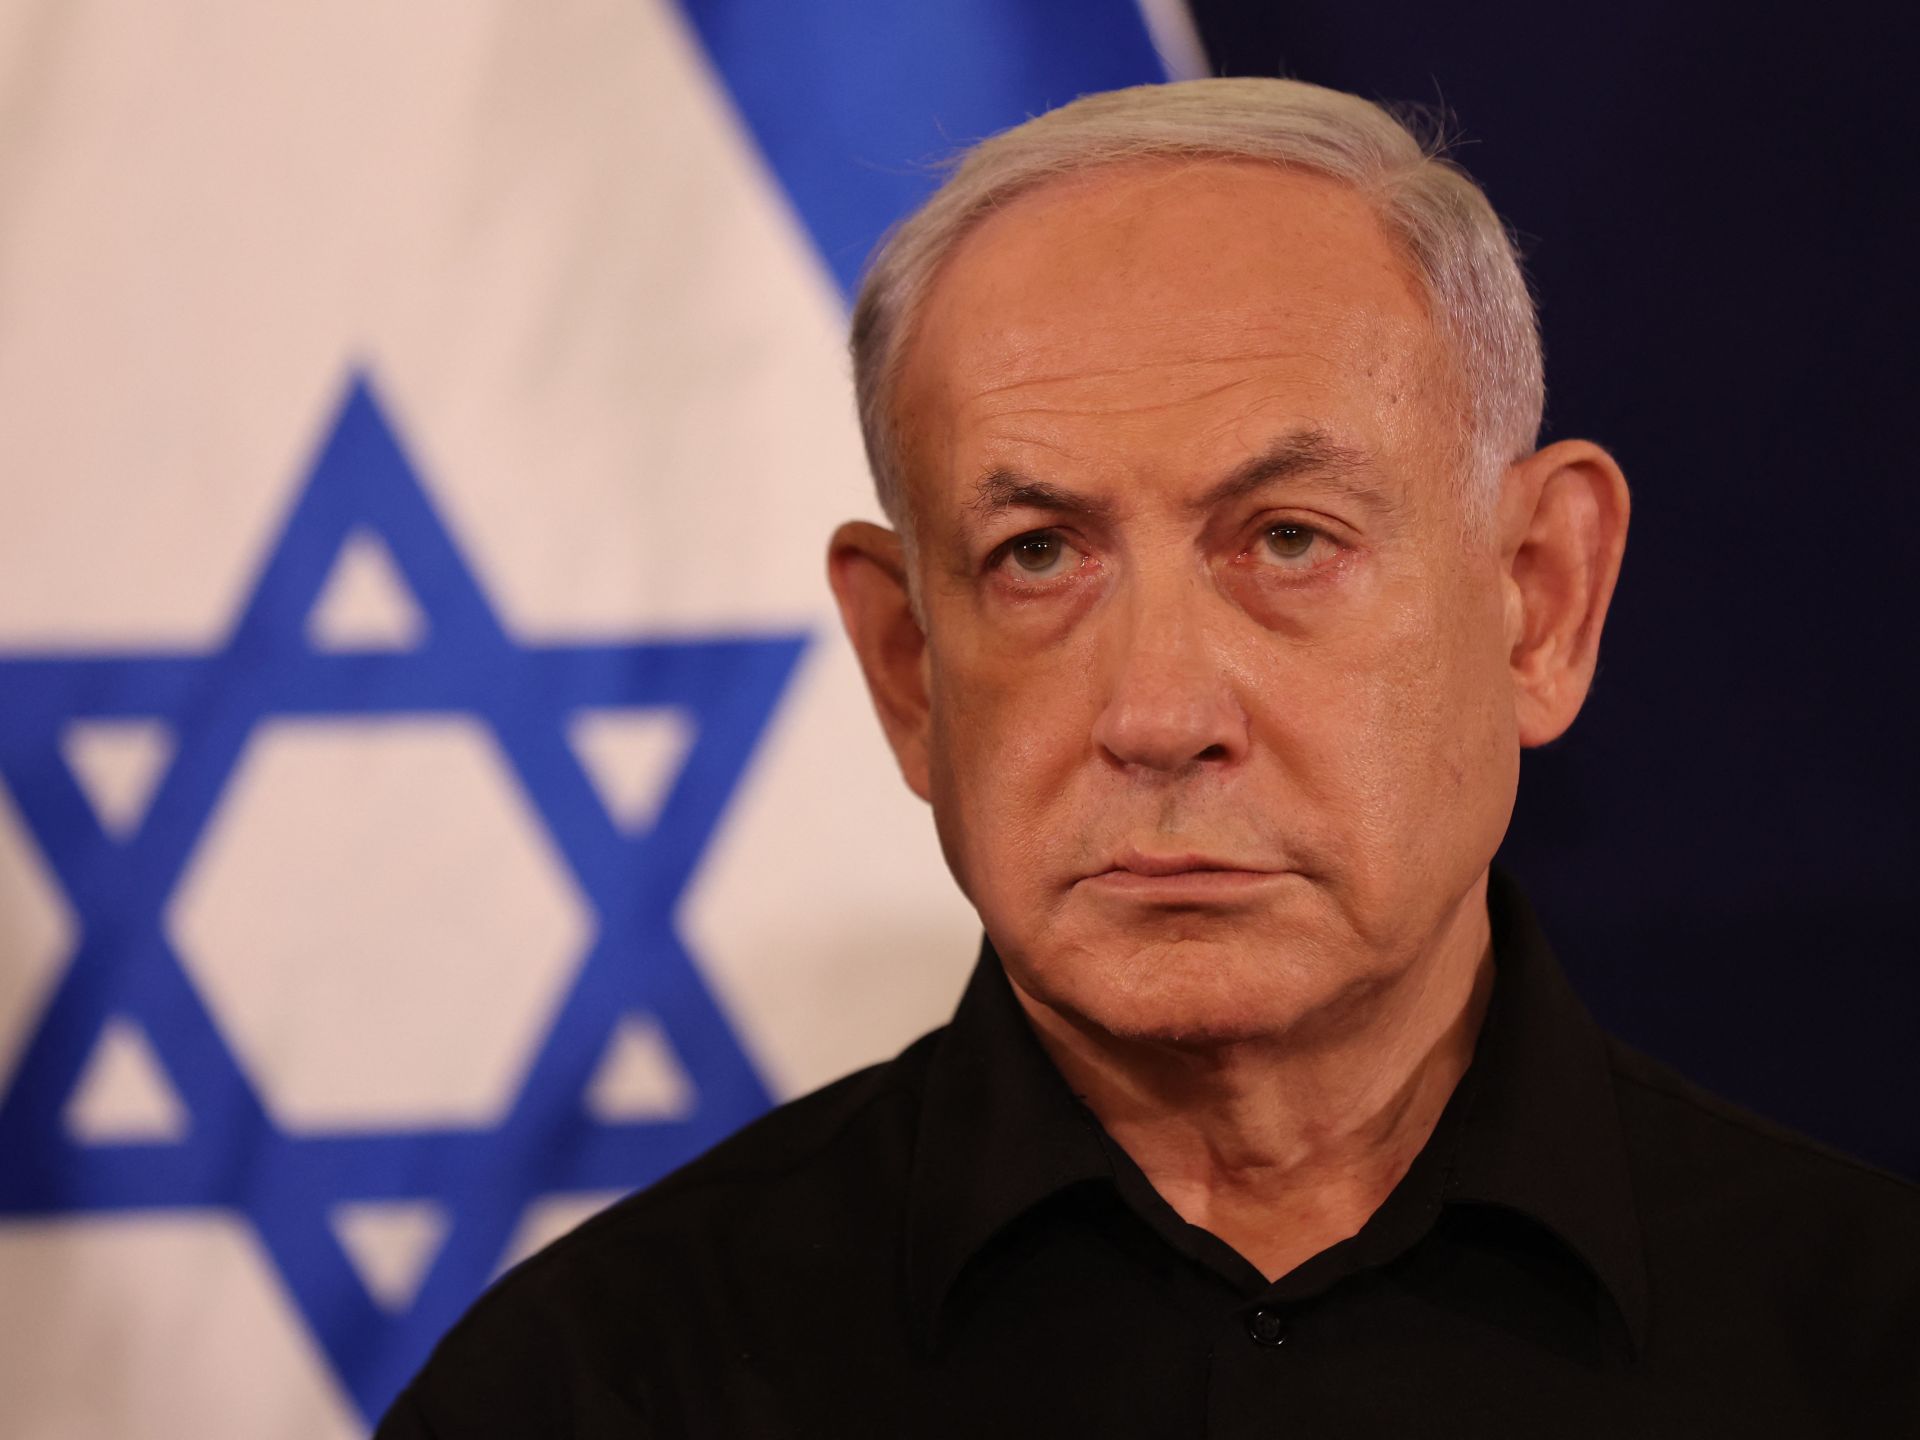 نتنياهو: إسرائيل منفتحة على “فترات توقف صغيرة” في قتال غزة | أخبار – البوكس نيوز